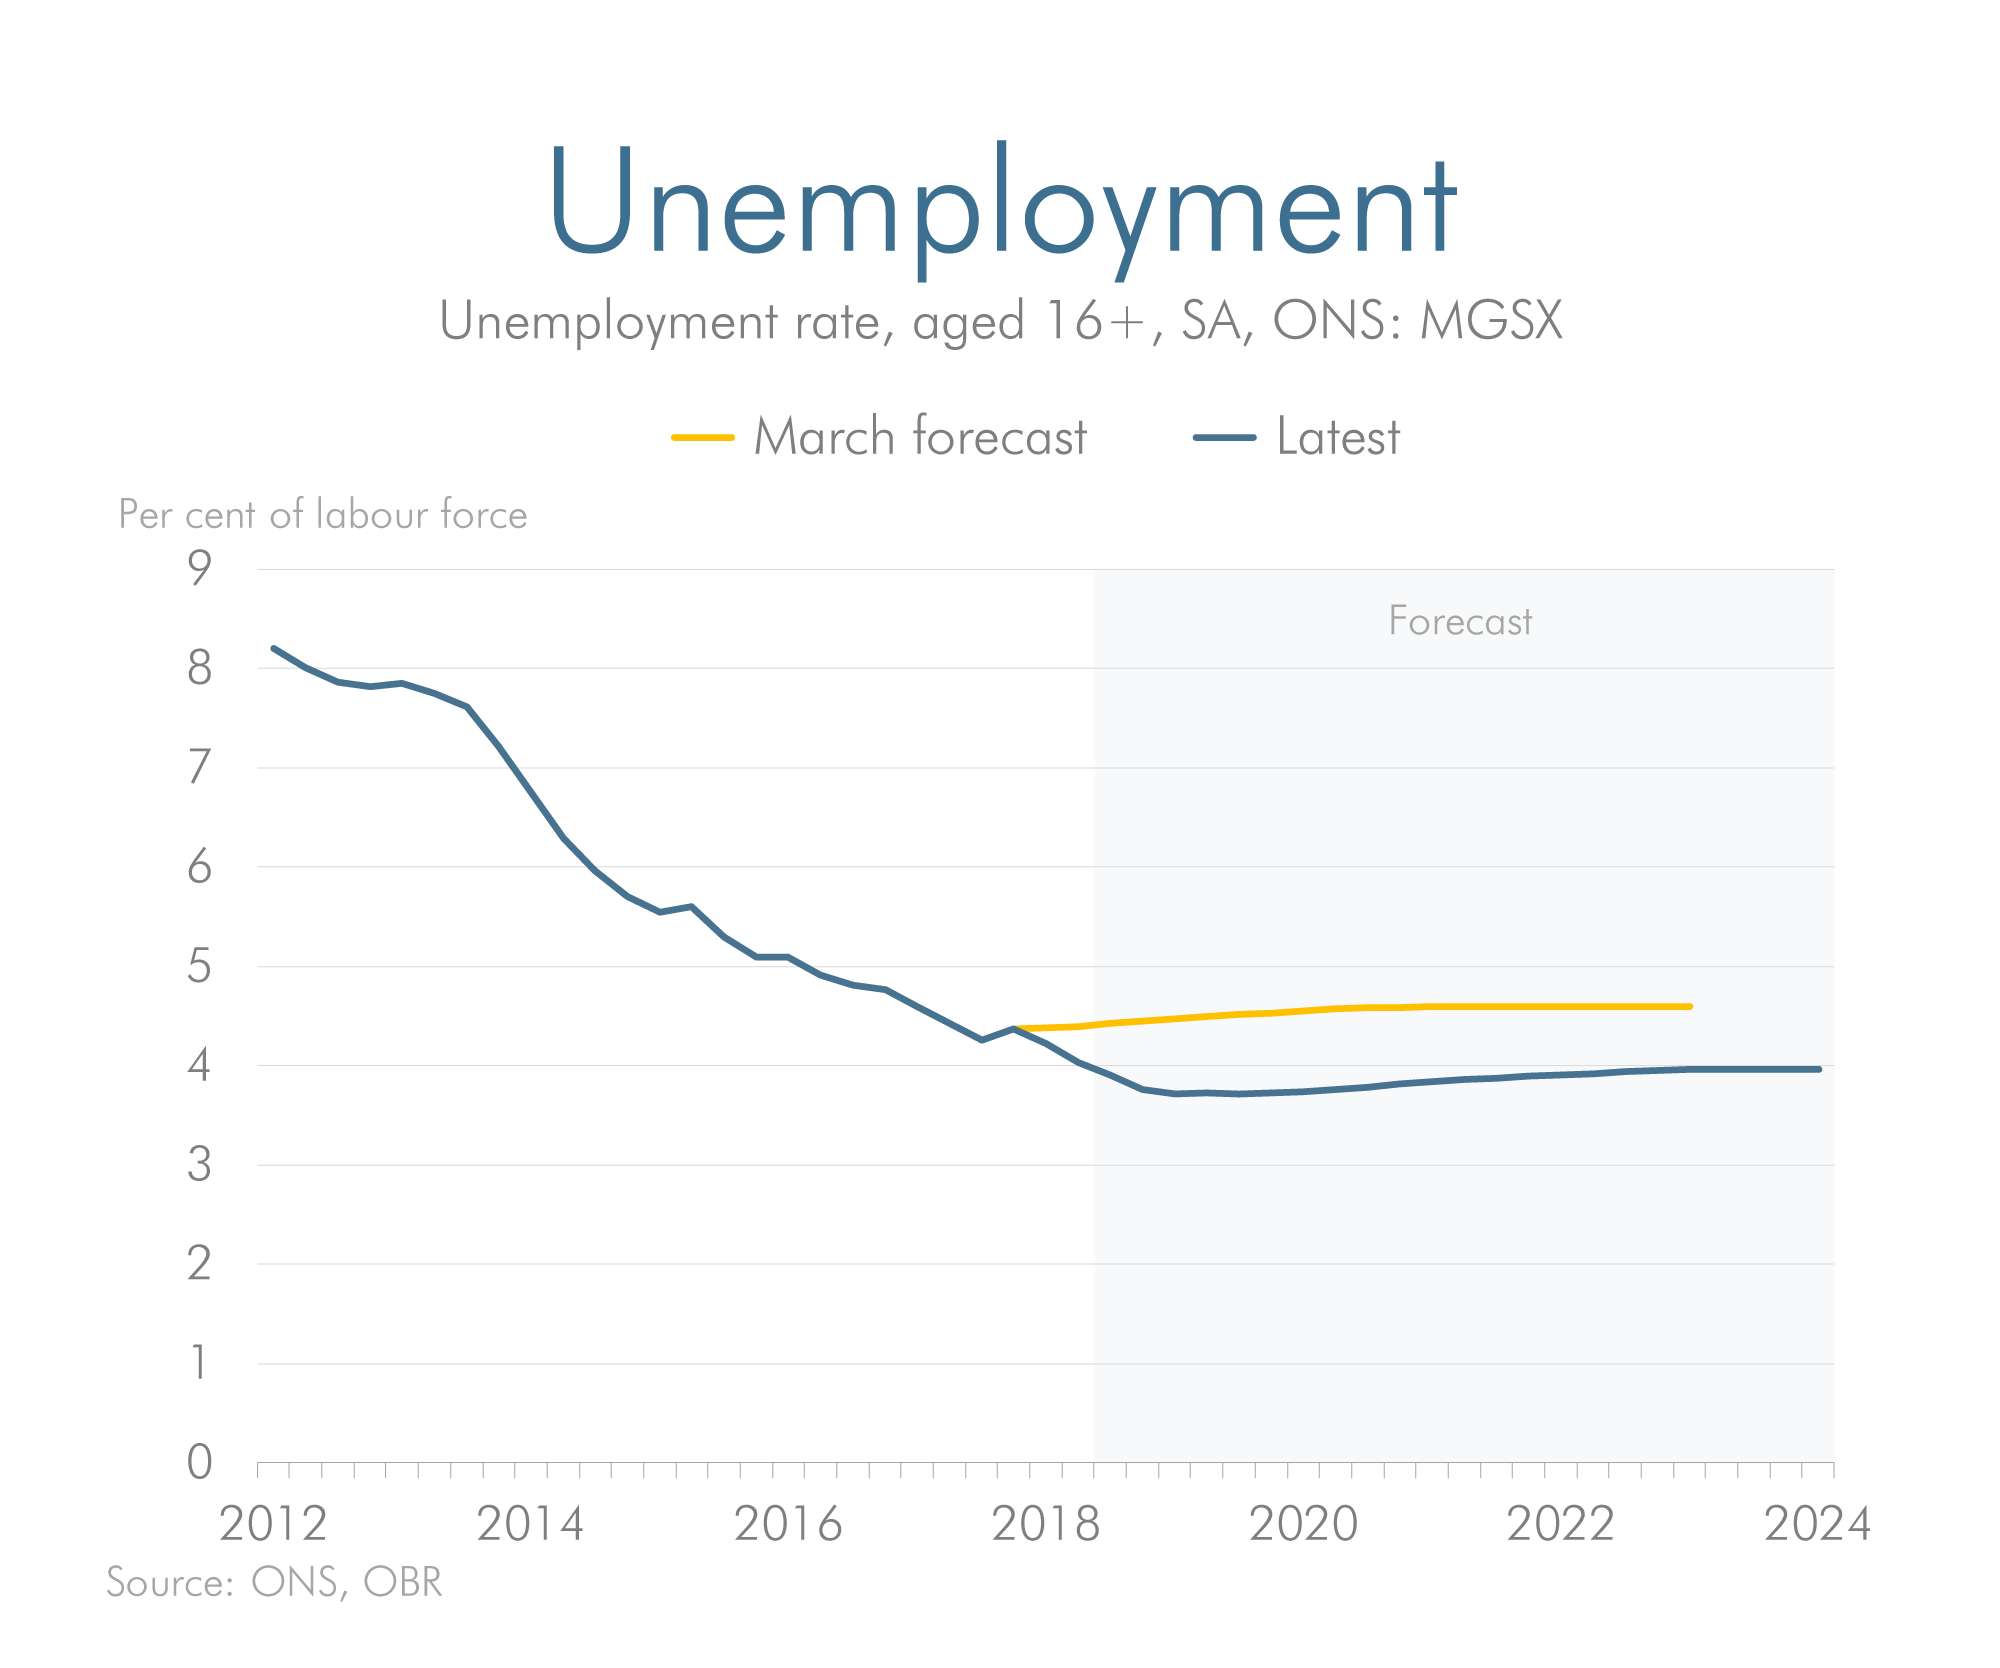 Unemployment previous vs latest forecast